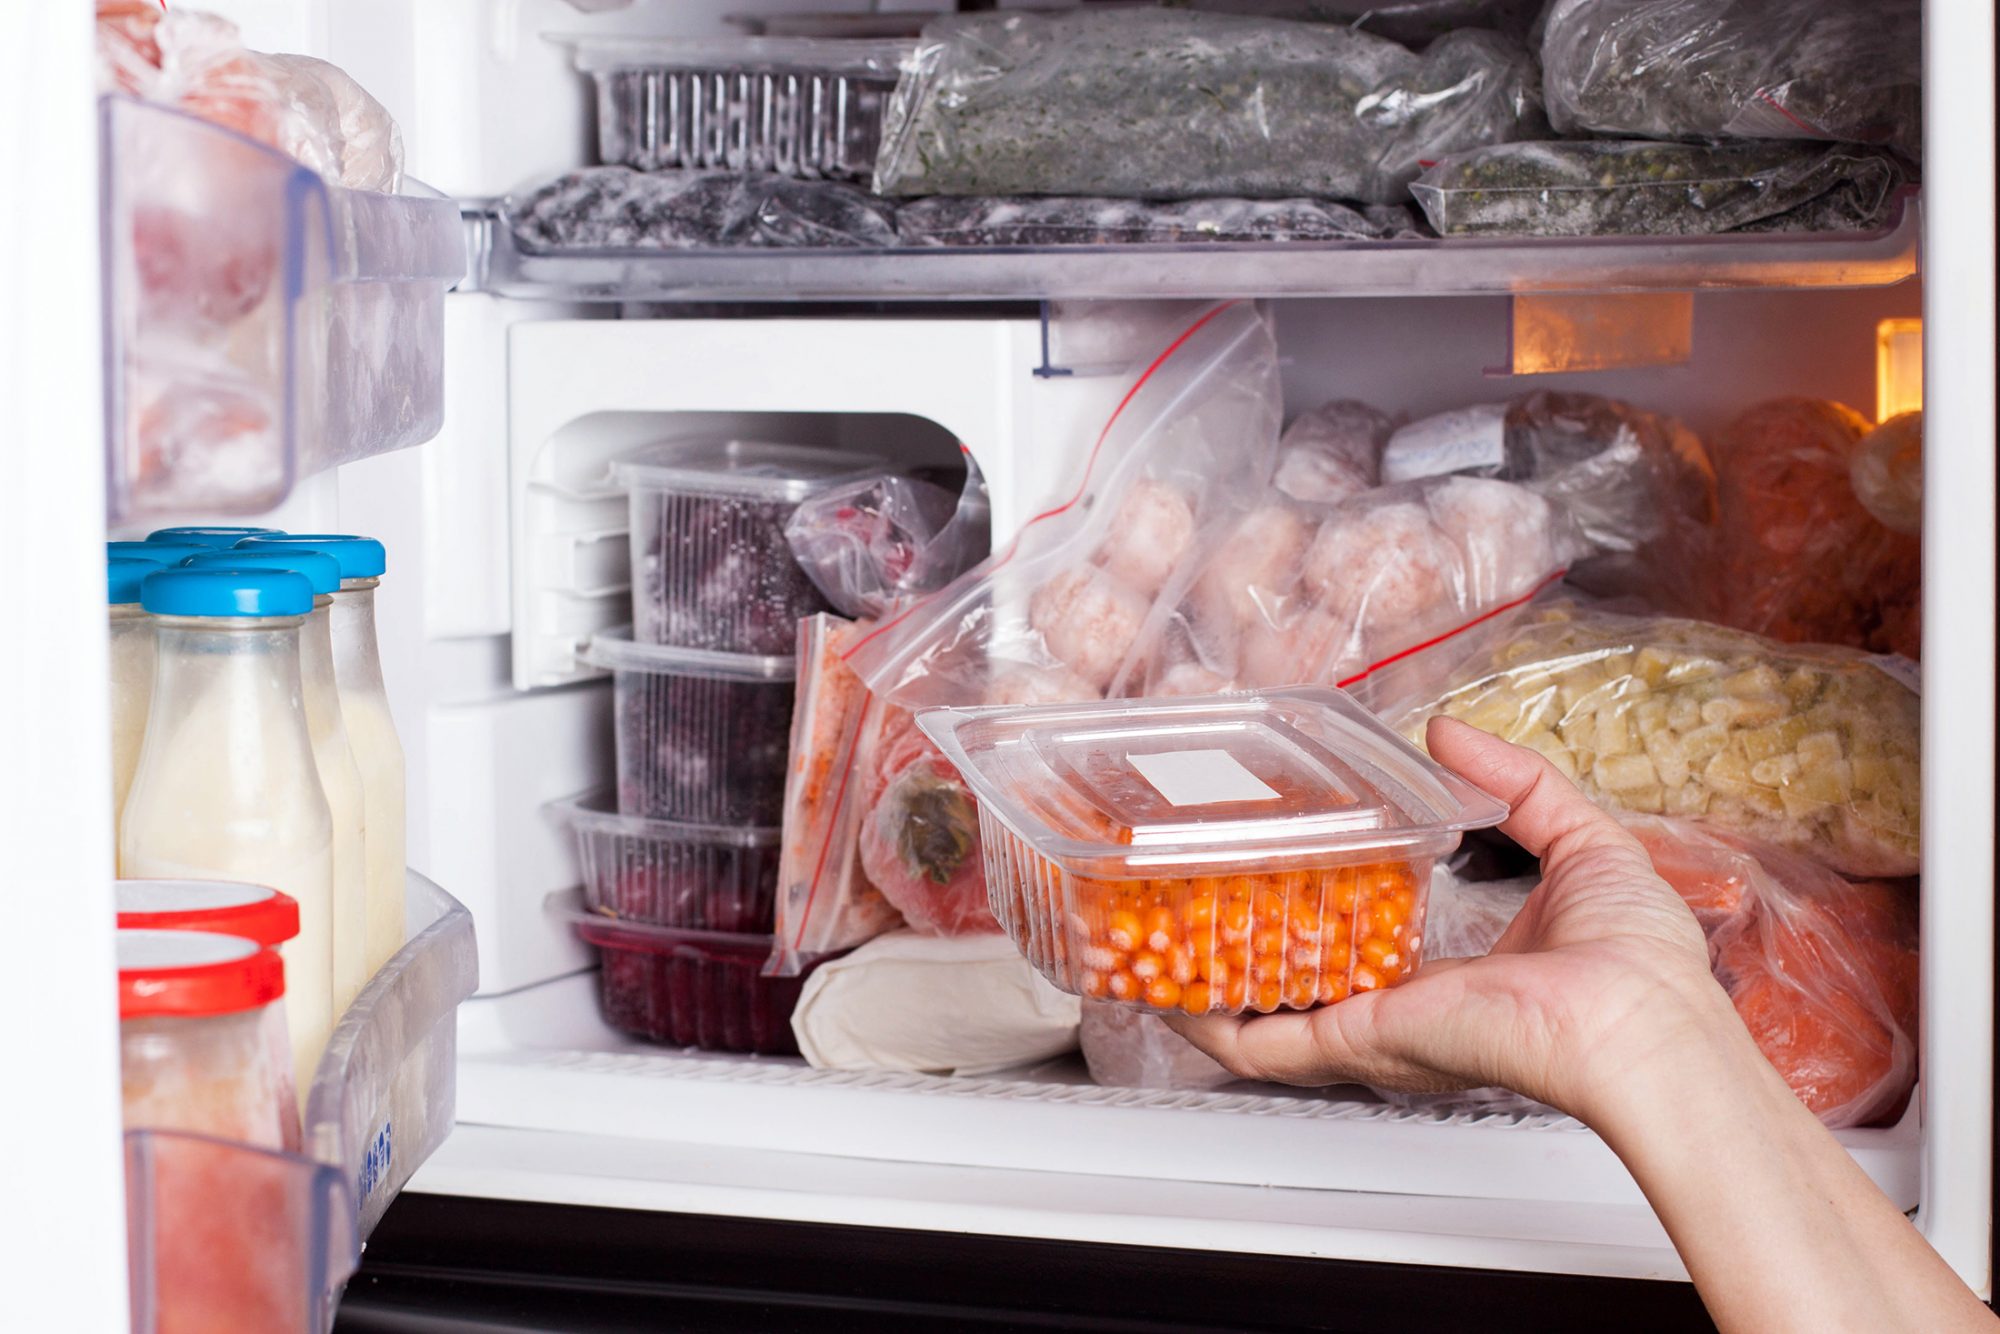 9 sai lầm khi bảo quản thực phẩm trong tủ đông làm tăng nguy cơ ngộ độc - Ảnh 5.